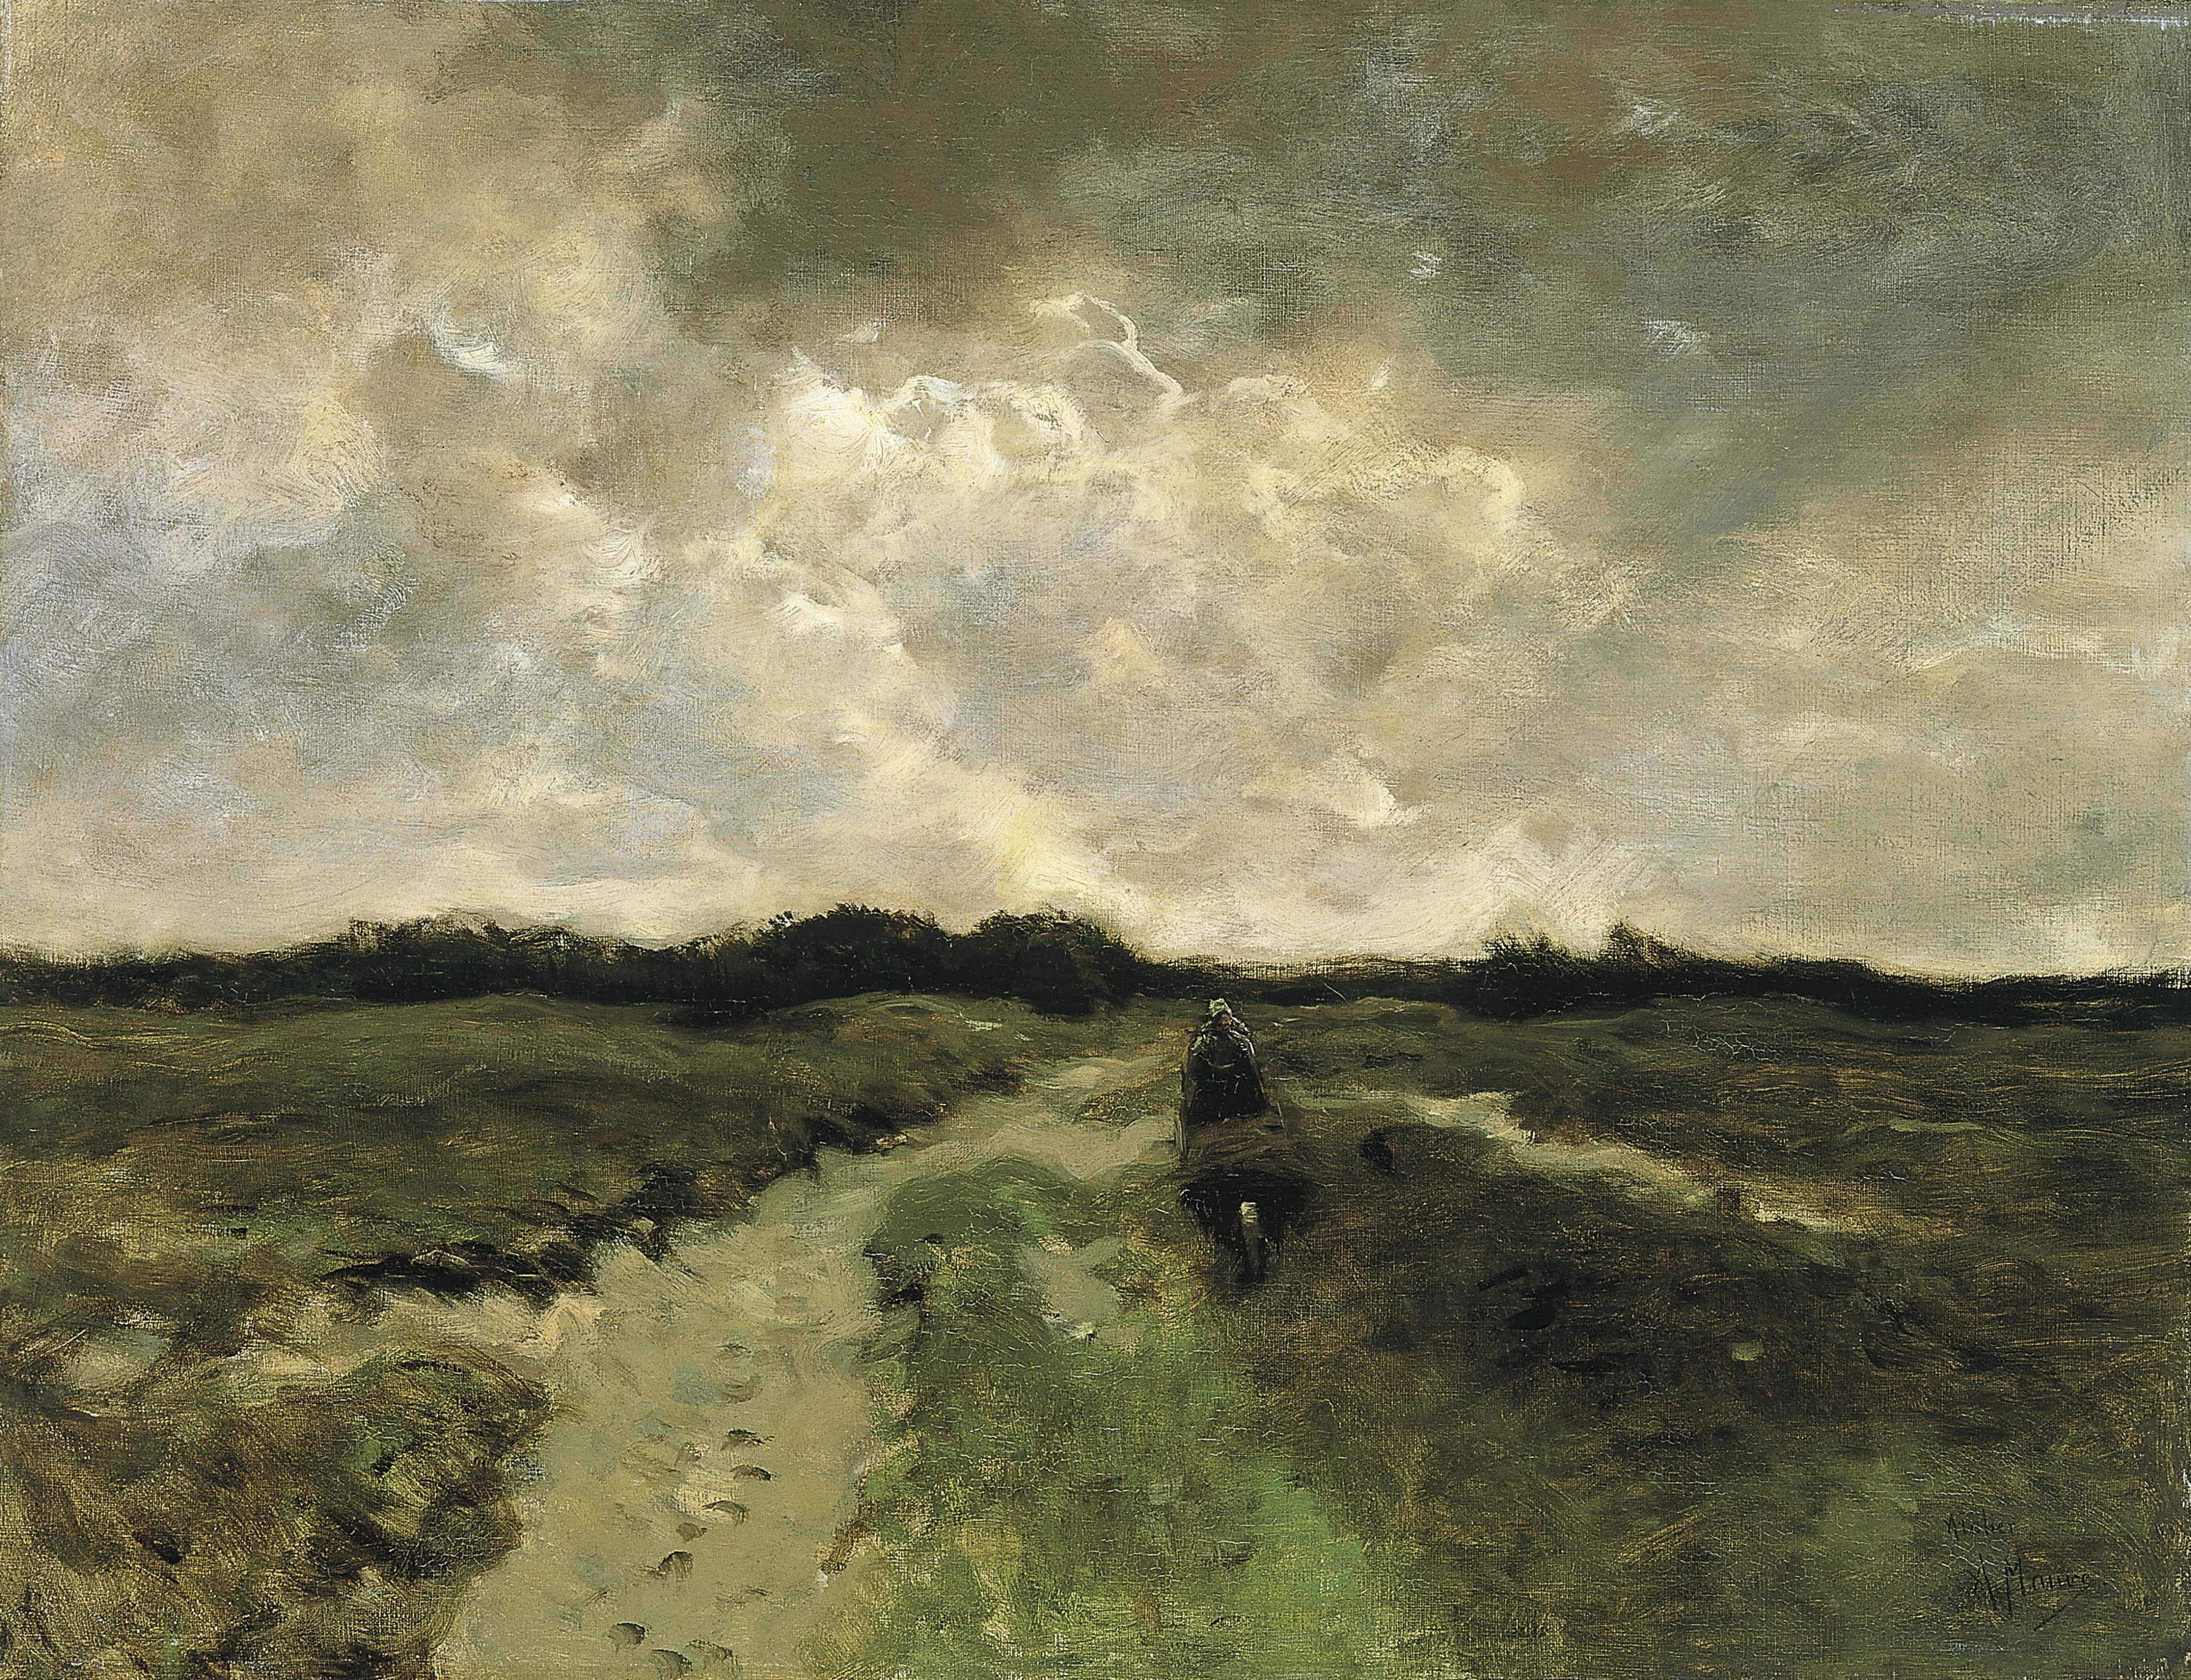 Crossing the Heath. Cruzando el brezal, c. 1885-1888